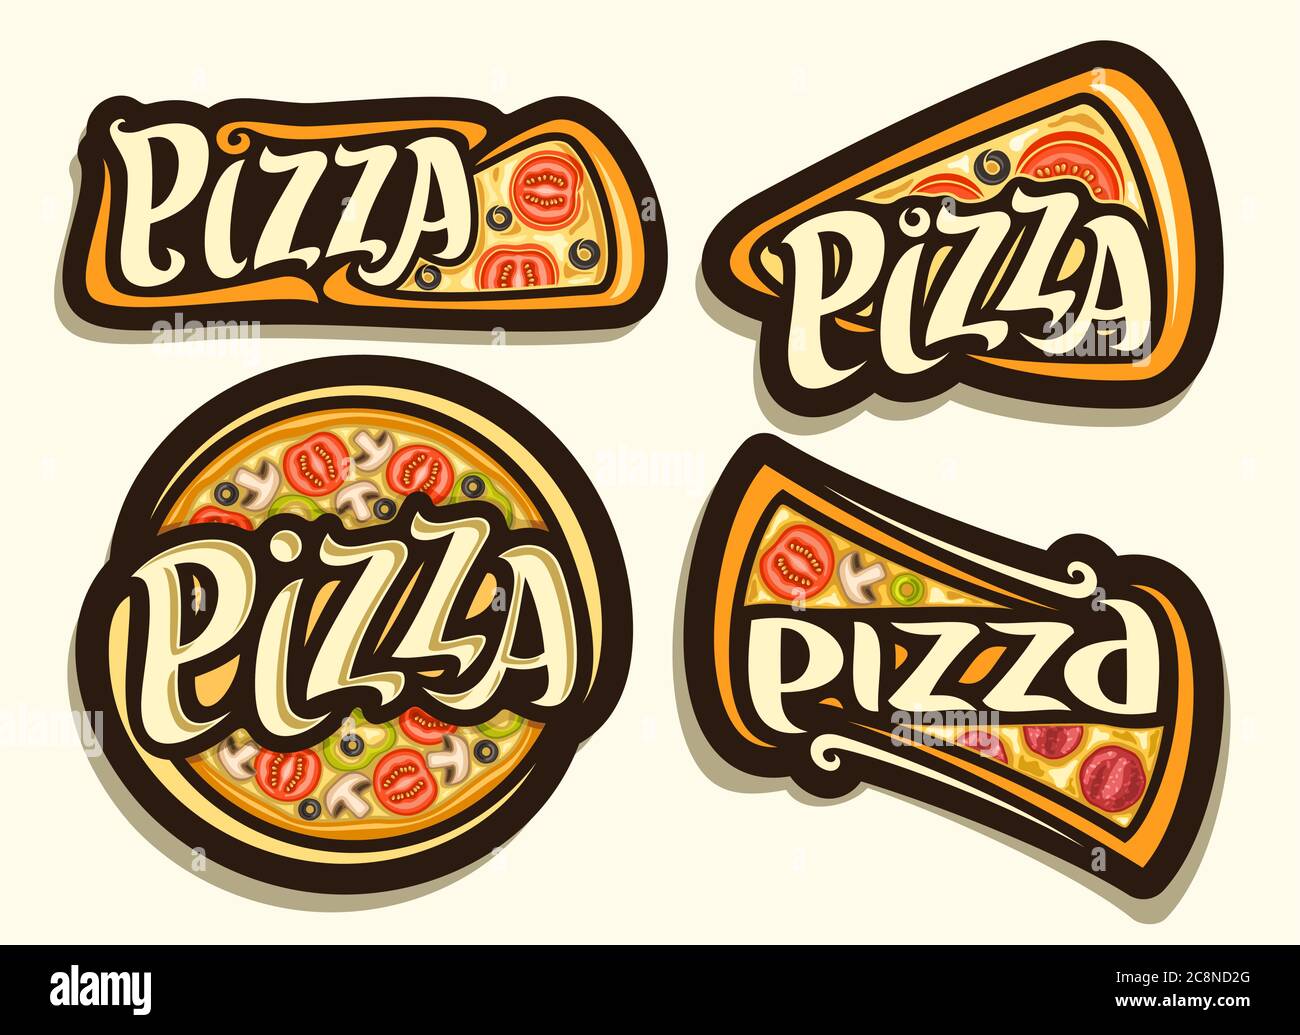 Vector Pizza Set, 4 ilustraciones aisladas con comida rápida italiana tradicional con diferentes títulos de pizza, grupo diverso de diseño decorativo insignia oscura Ilustración del Vector